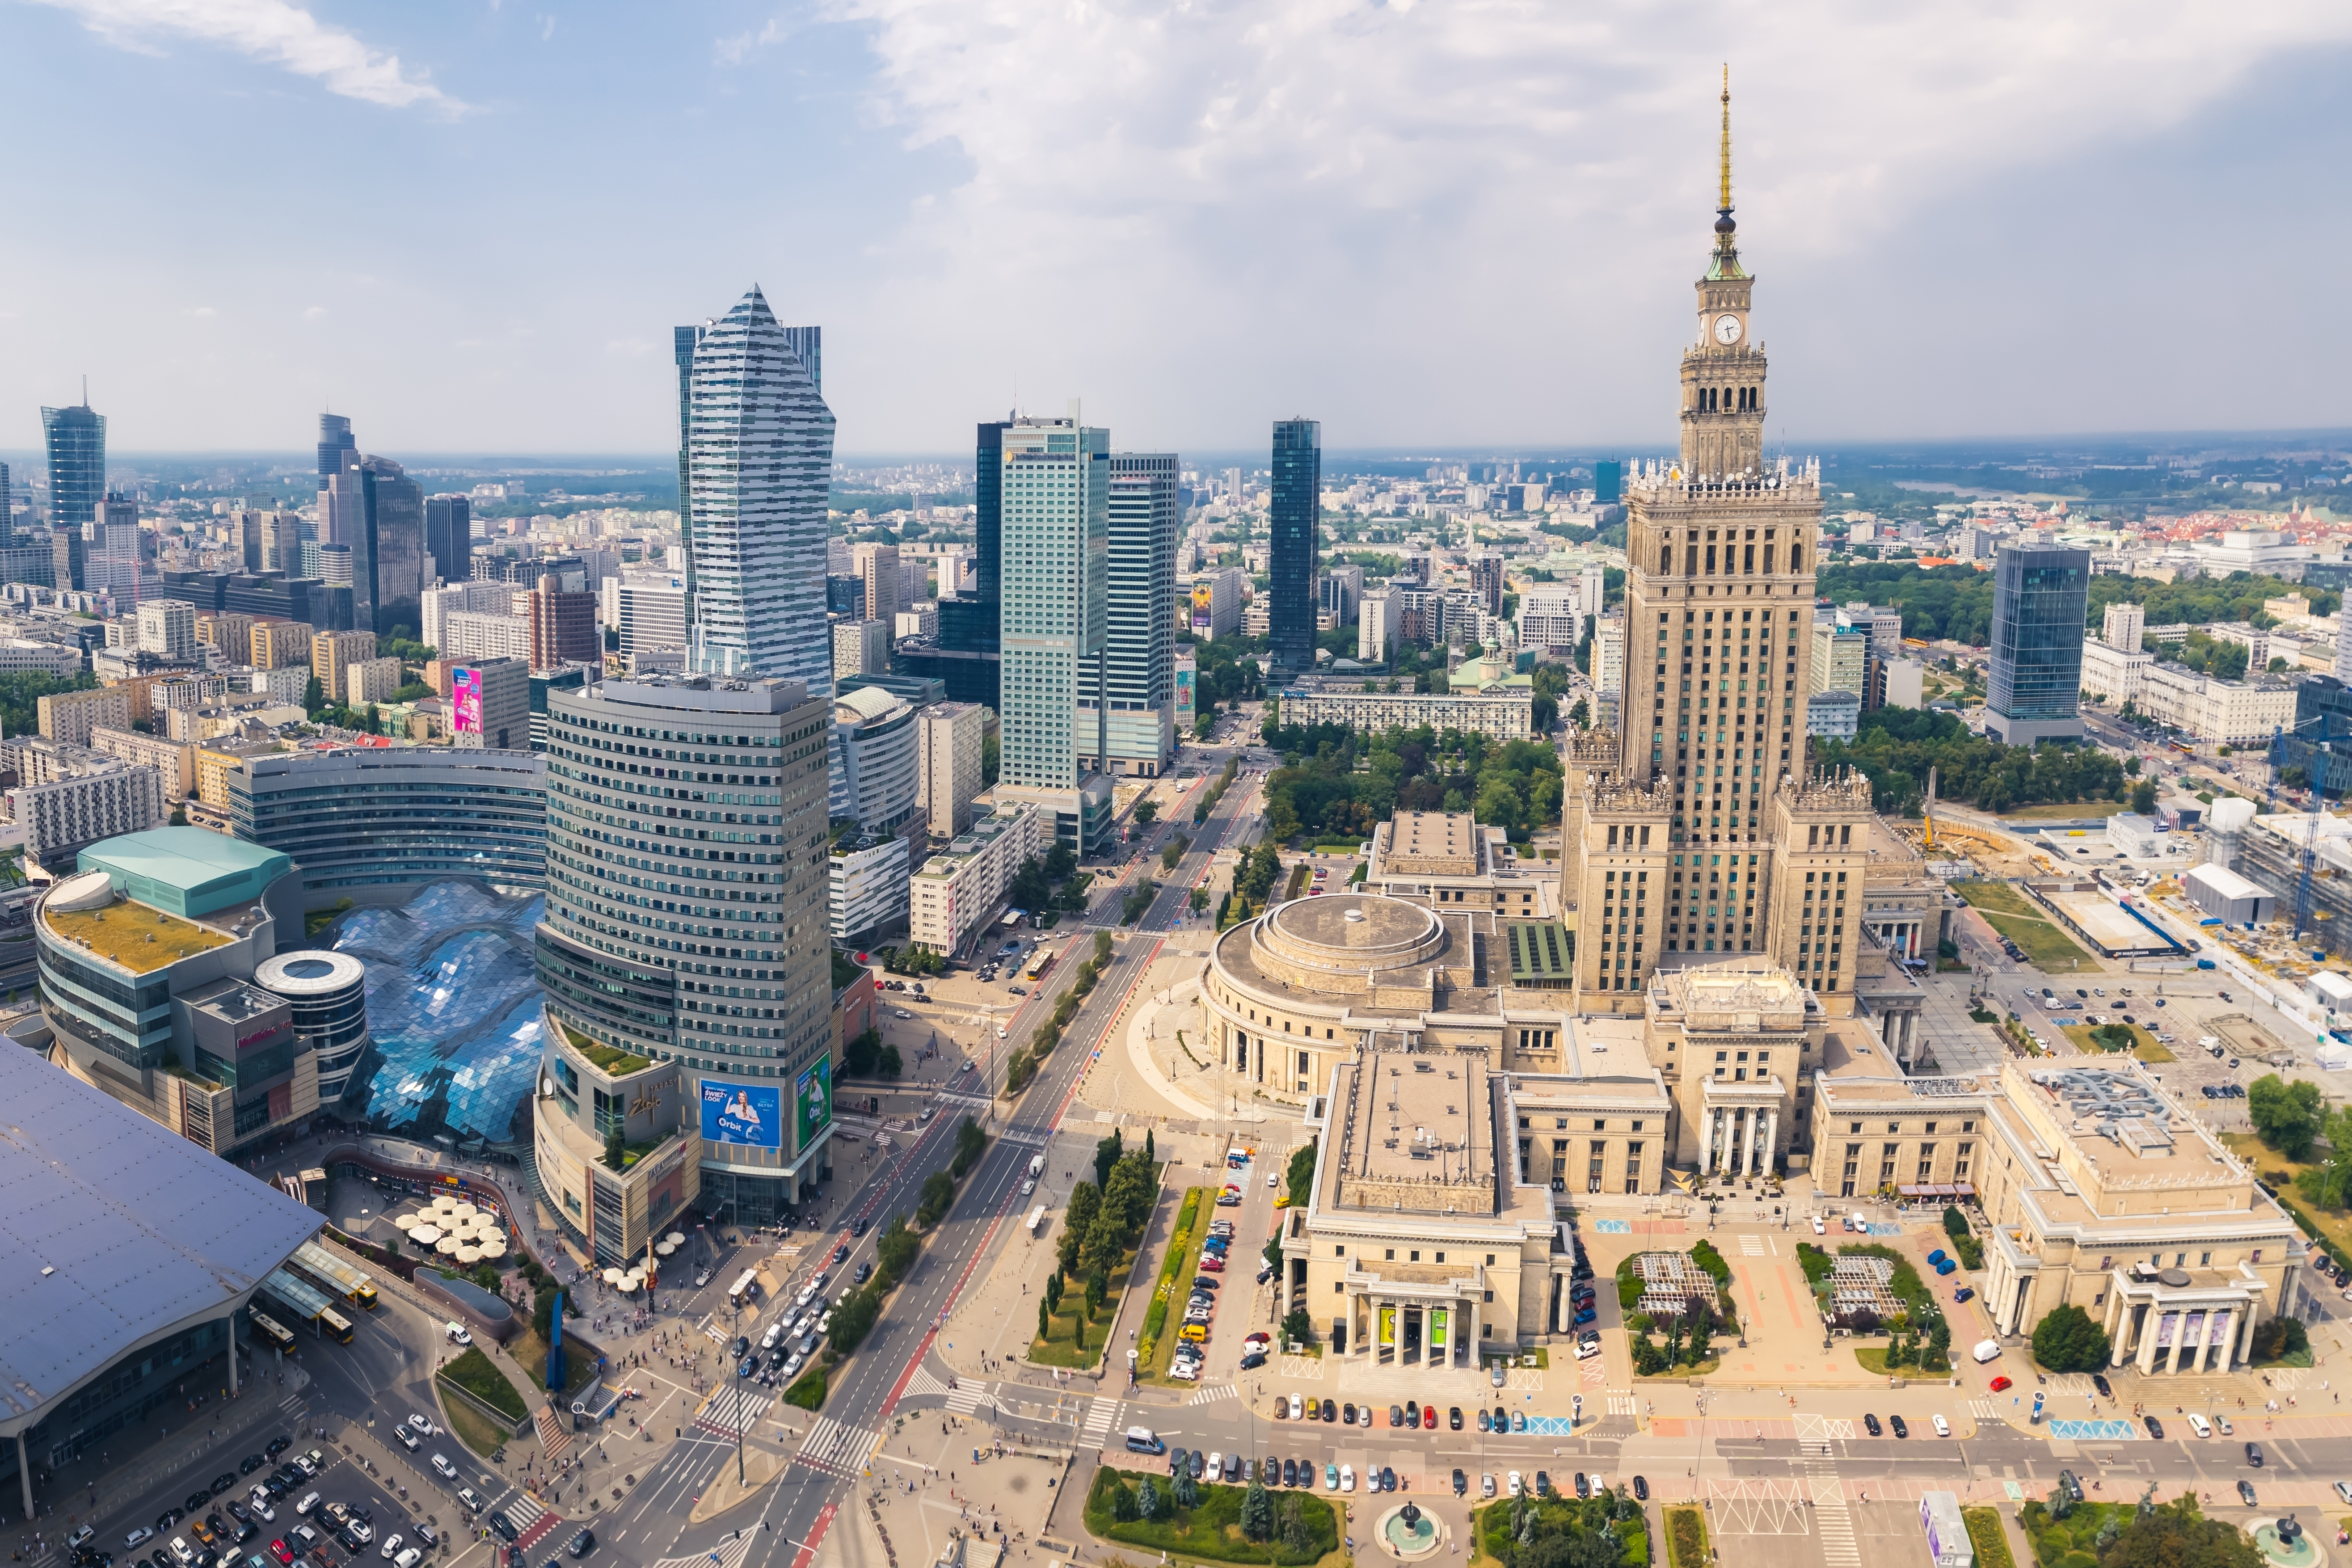 Панорама Кракова как символ программы получения карты побыту Польши